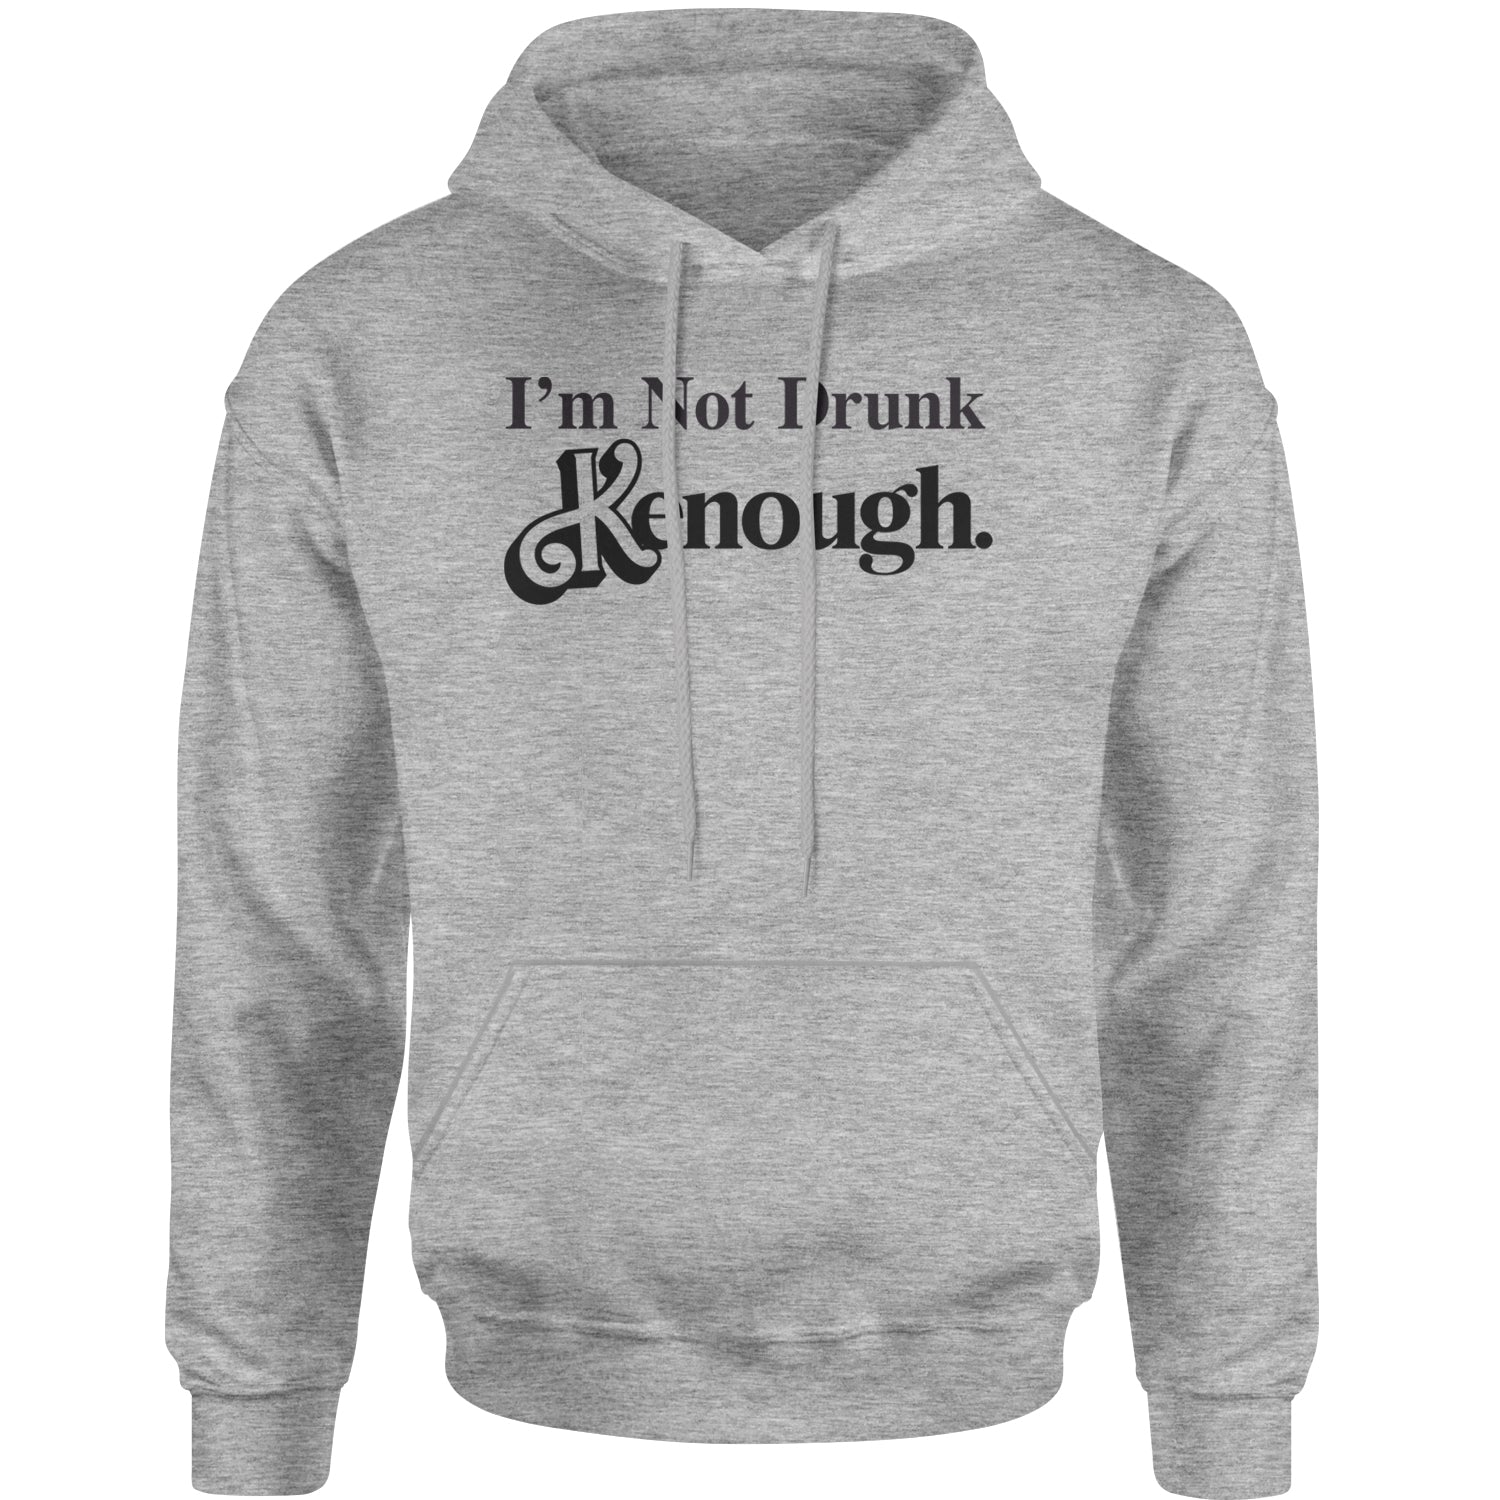 I'm Not Drunk Kenough Barbenheimer Adult Hoodie Sweatshirt